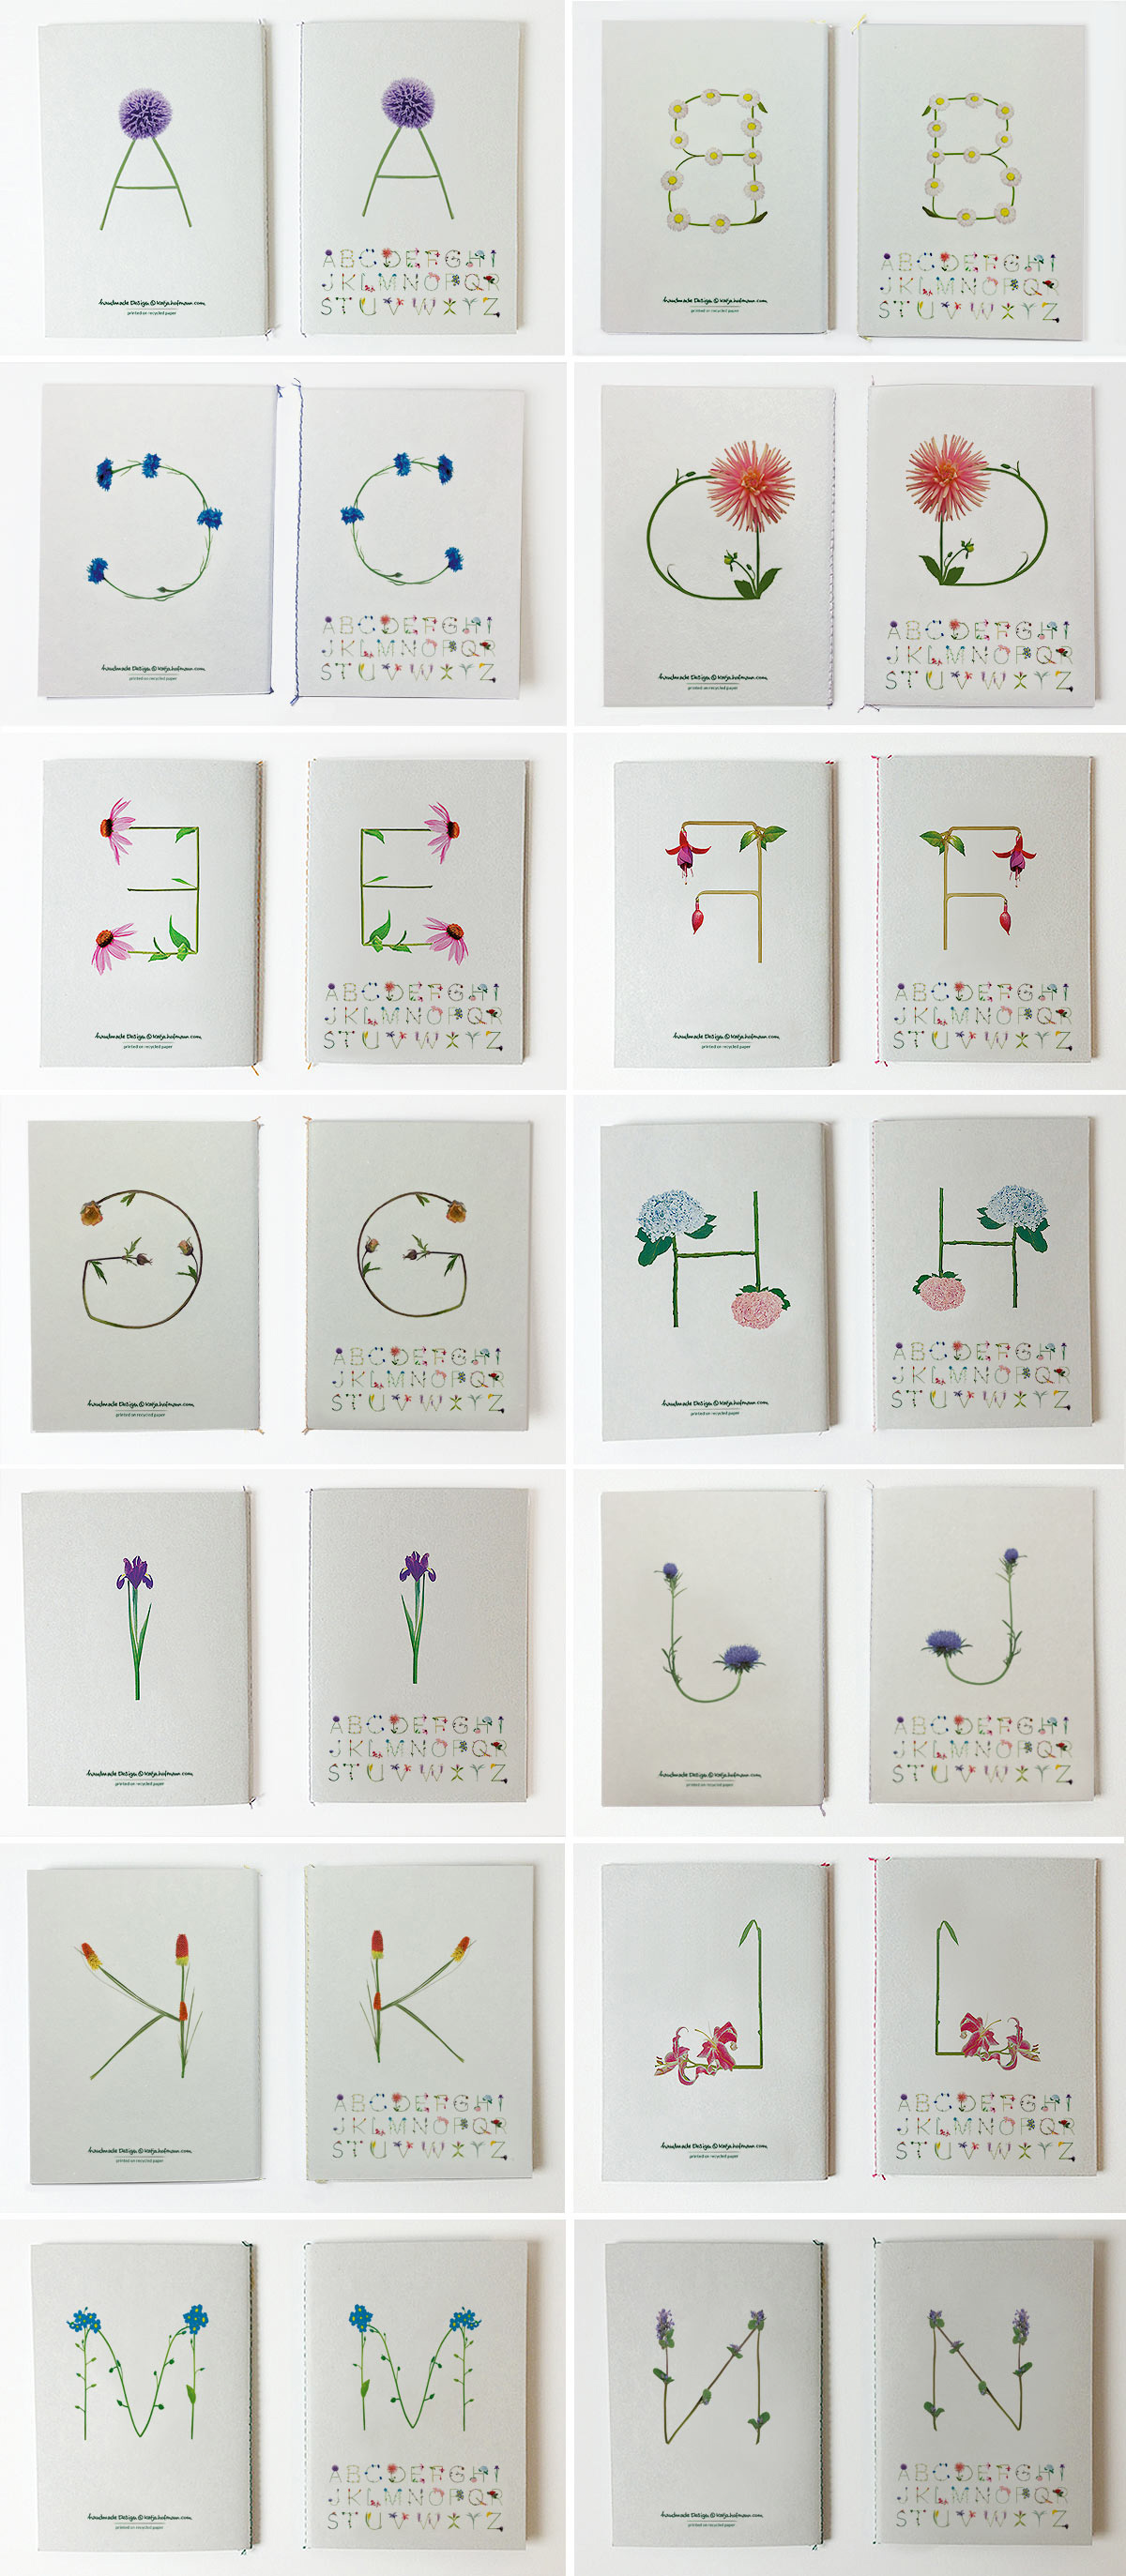 Katja Hofmann, Studio for good handmade Design, Blumenbuchstaben, Blumenschrift, Blumenalphabet, Print, Notizbücher, Fadenbindung, handmade, Recyclingpapier